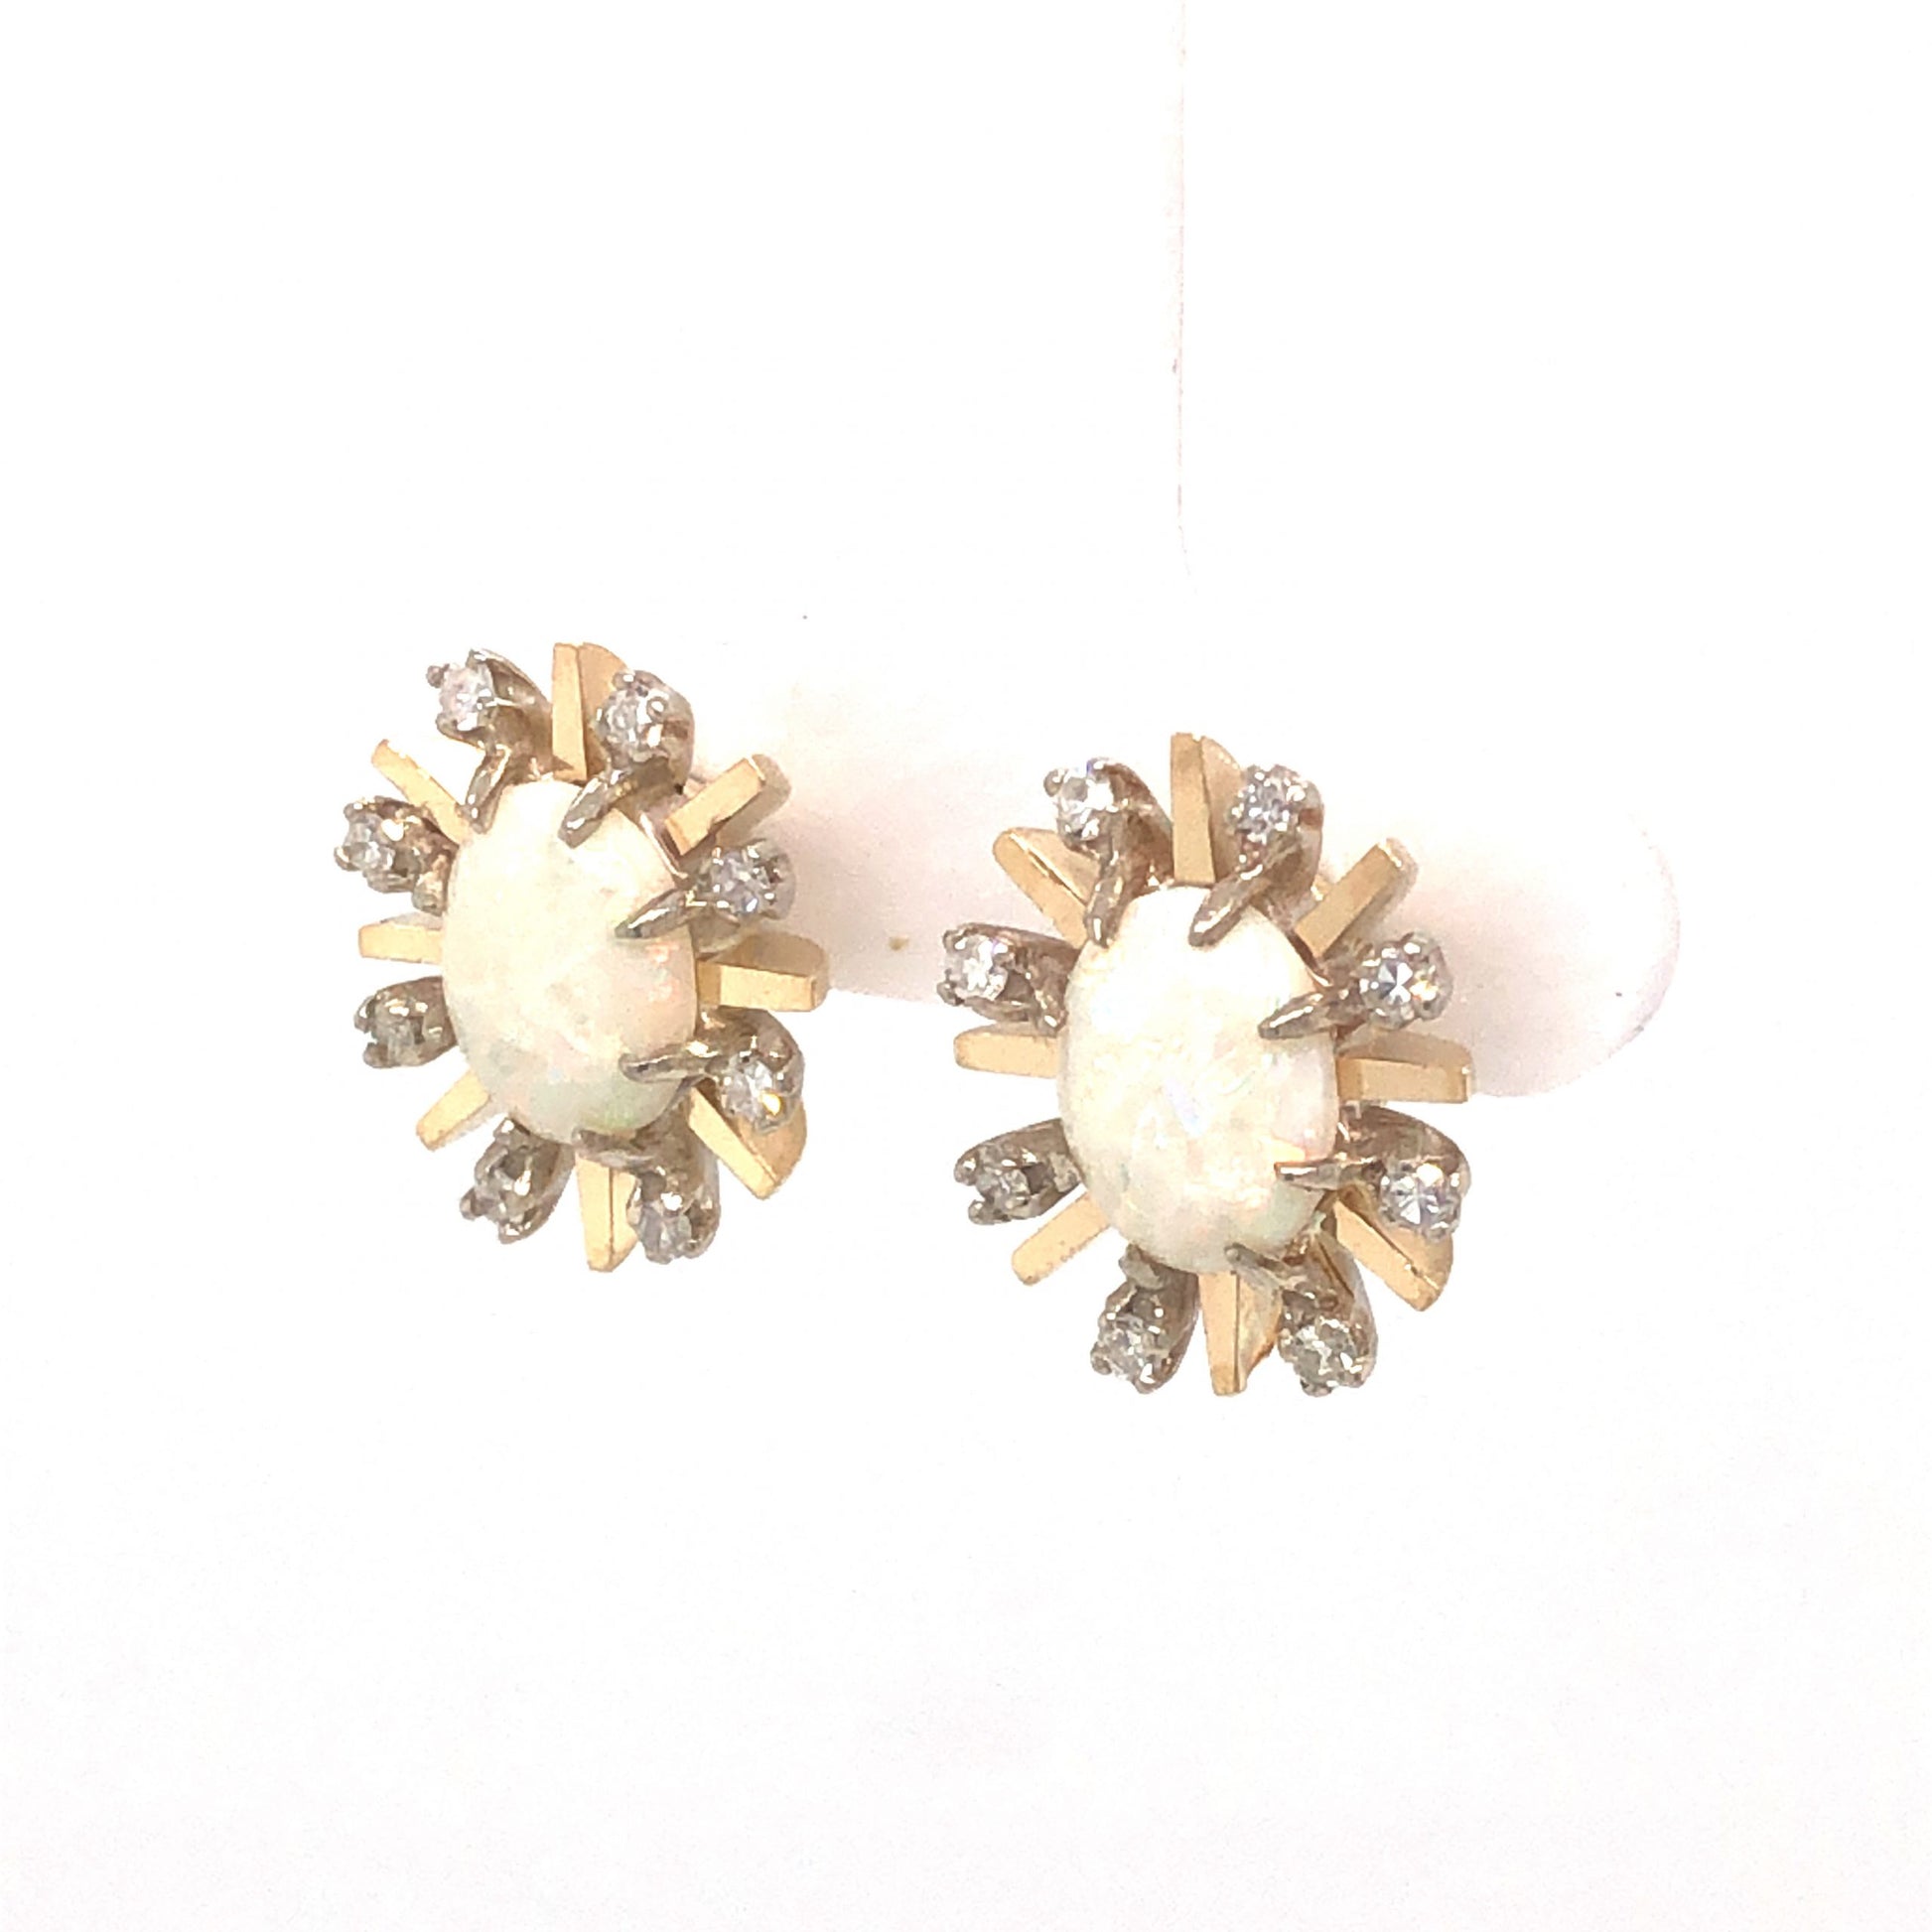 2.20 Victorian Opal & Diamond Earrings in 14k Yellow Gold